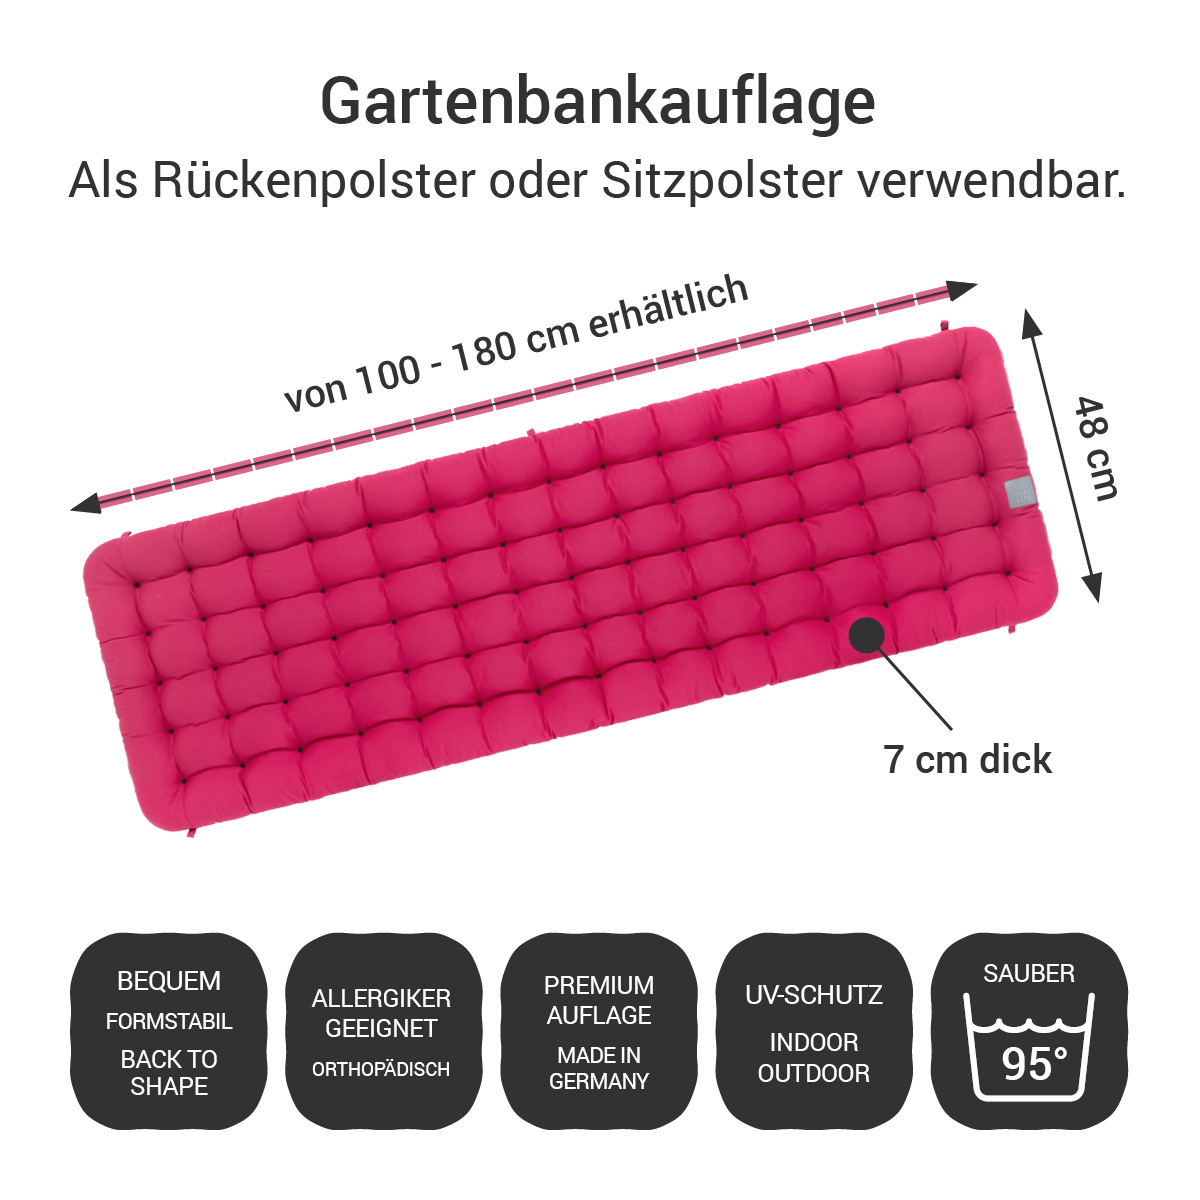 Gartenbank Auflagen pink 2tlg. (Sitz- / Rückenpolster) bequem, Allergiker geeignet, orthopädisch, UV-Schutz, Indoor / Outdoor, Made in Germany